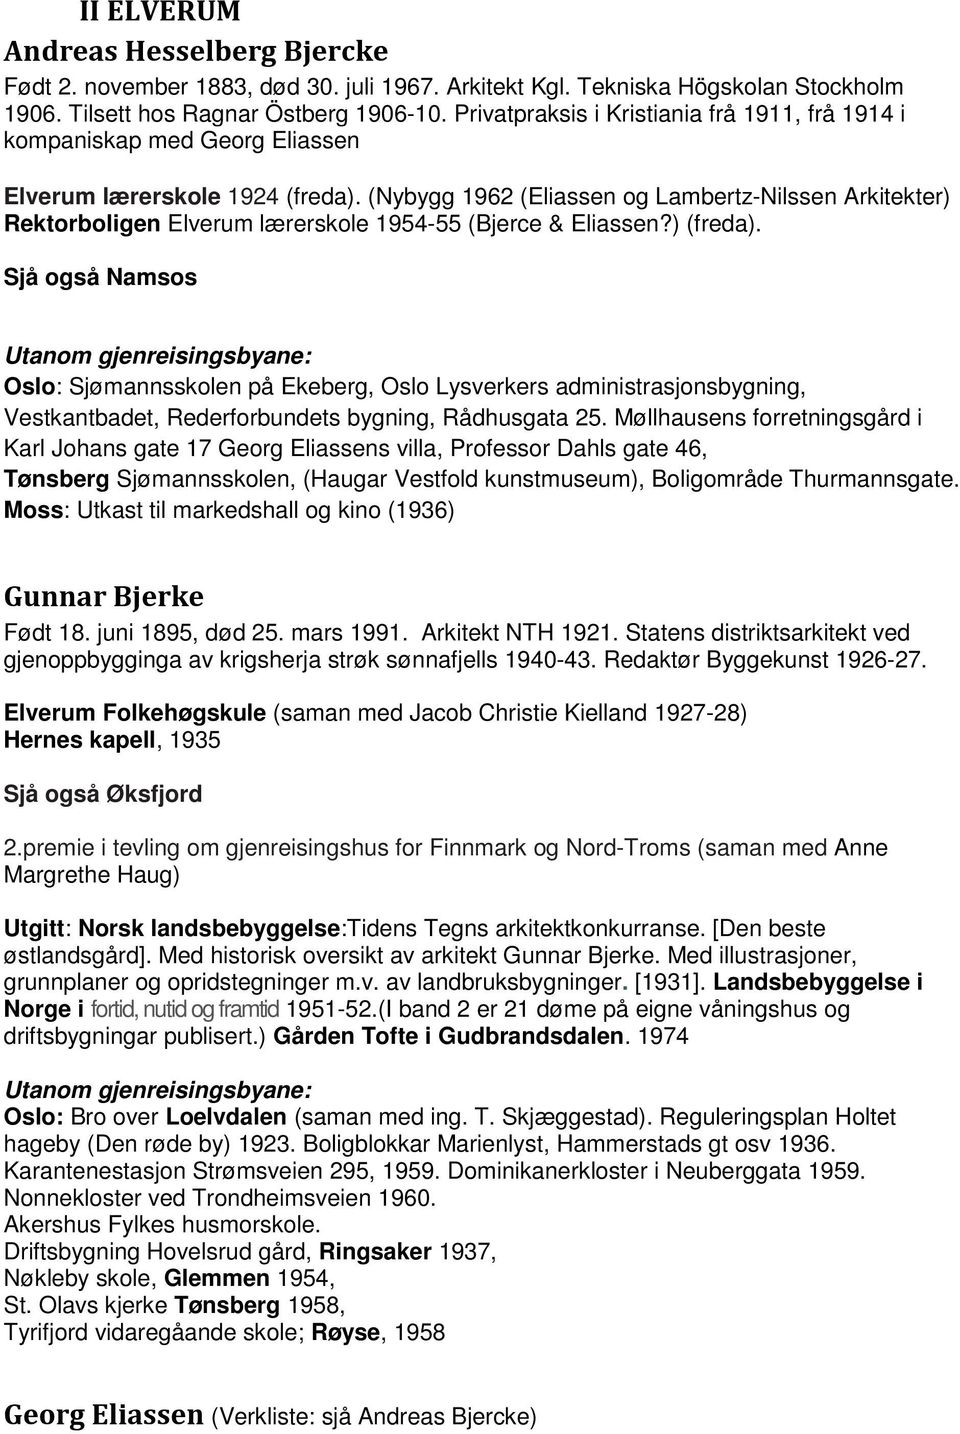 (Nybygg 1962 (Eliassen og Lambertz-Nilssen Arkitekter) Rektorboligen Elverum lærerskole 1954-55 (Bjerce & Eliassen?) (freda).